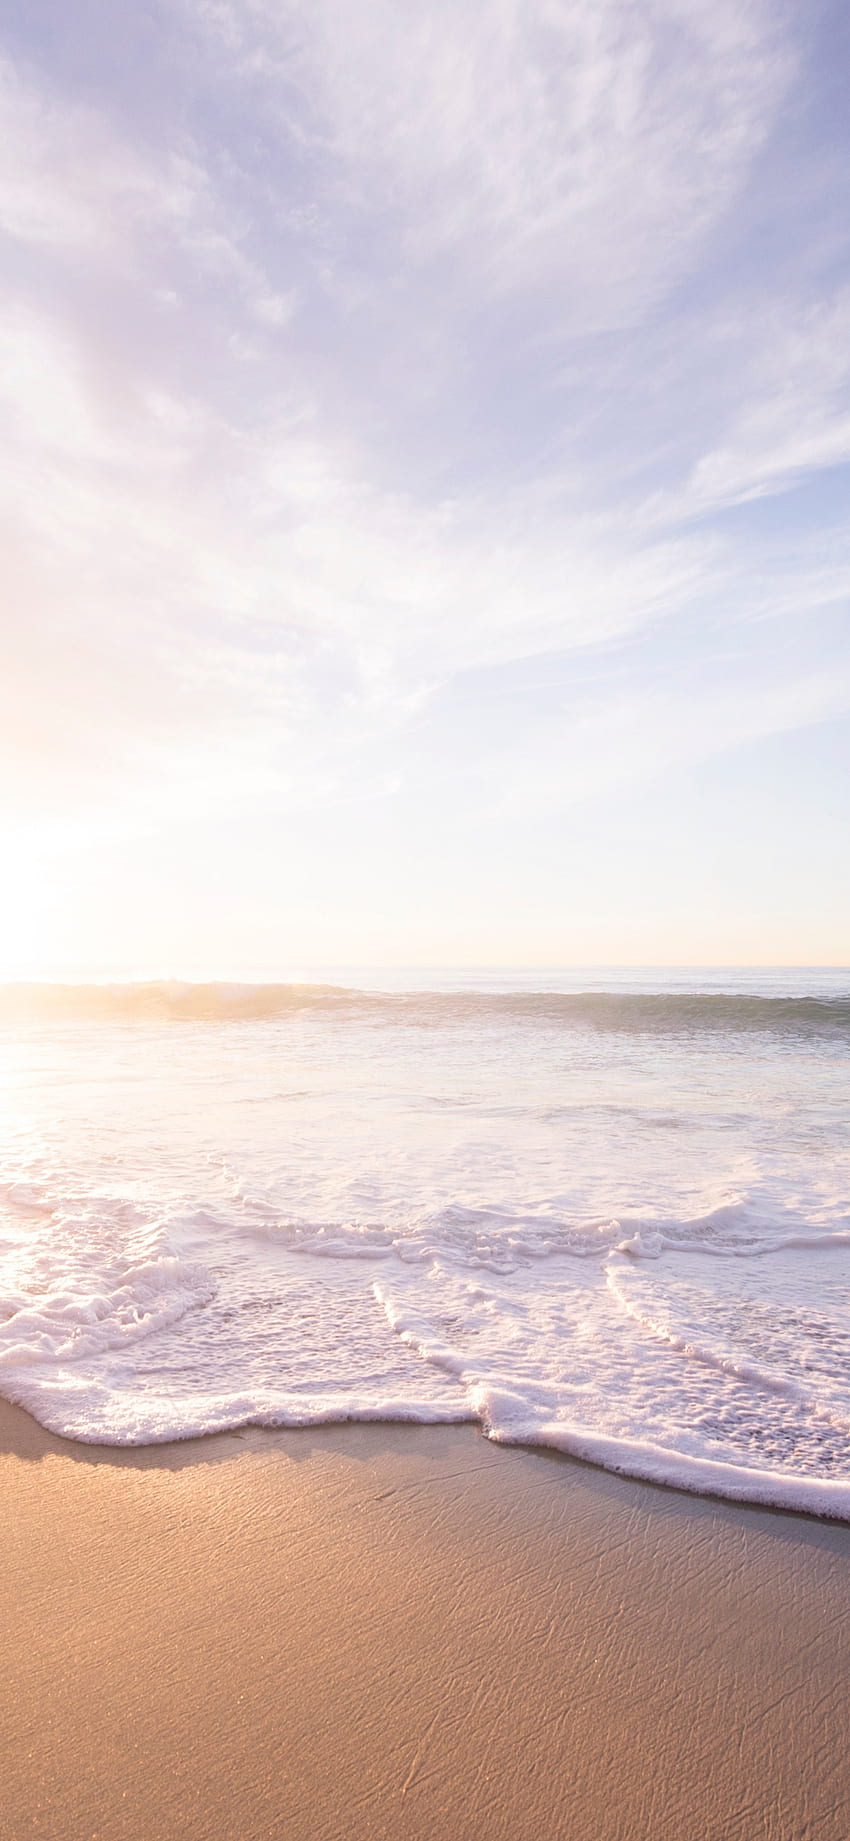 Suave, olas del mar, playa, orilla del mar, amanecer, , , 4821aa2c, Playa Amanecer iPhone fondo de pantalla del teléfono